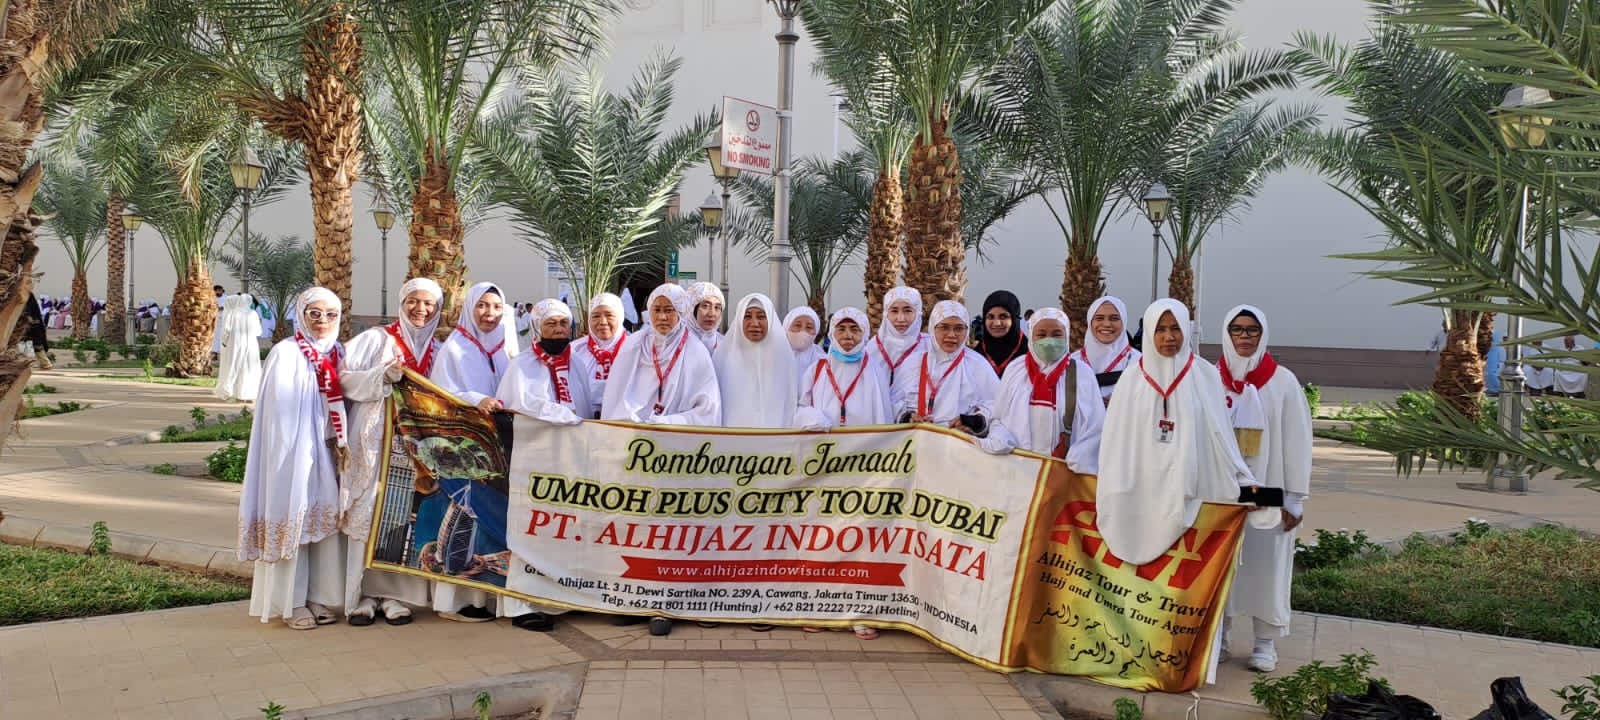 Promo Umroh Plus Resmi Kemenag RI Semarang